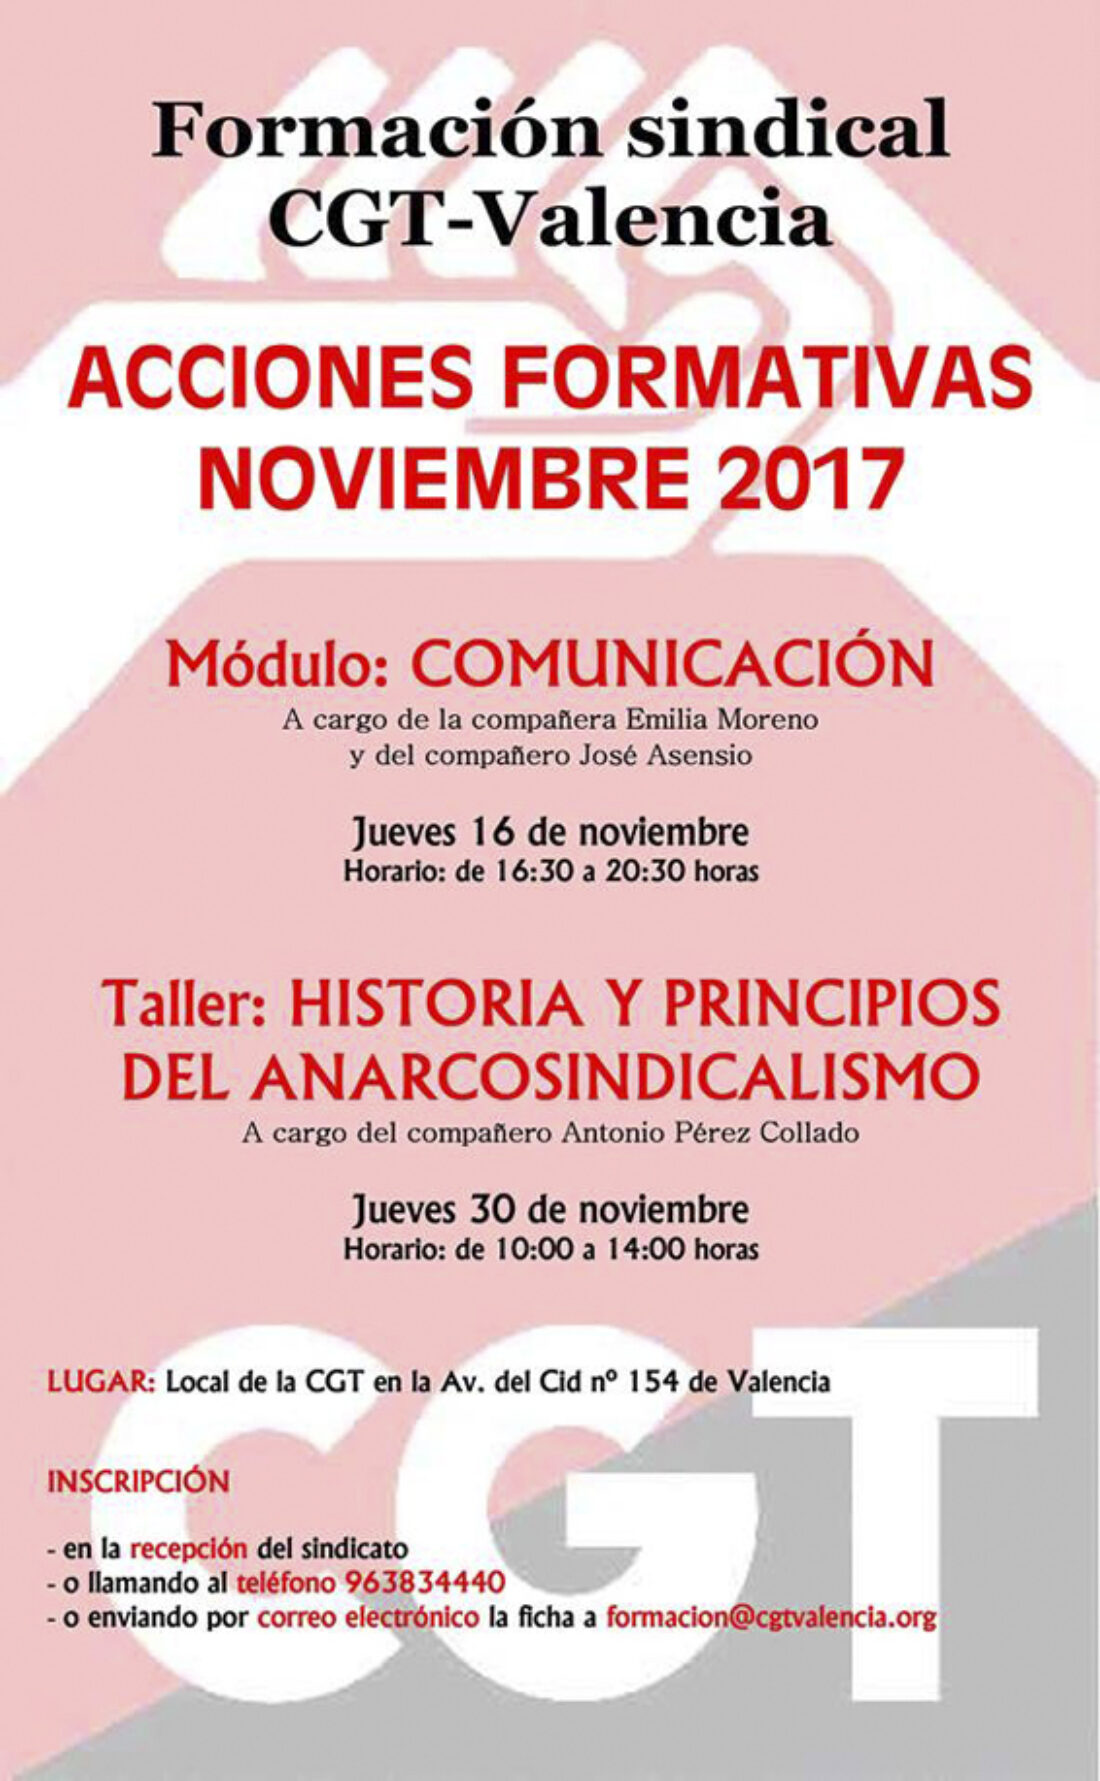 Acciones formativas de CGT-Valencia para noviembre 2017